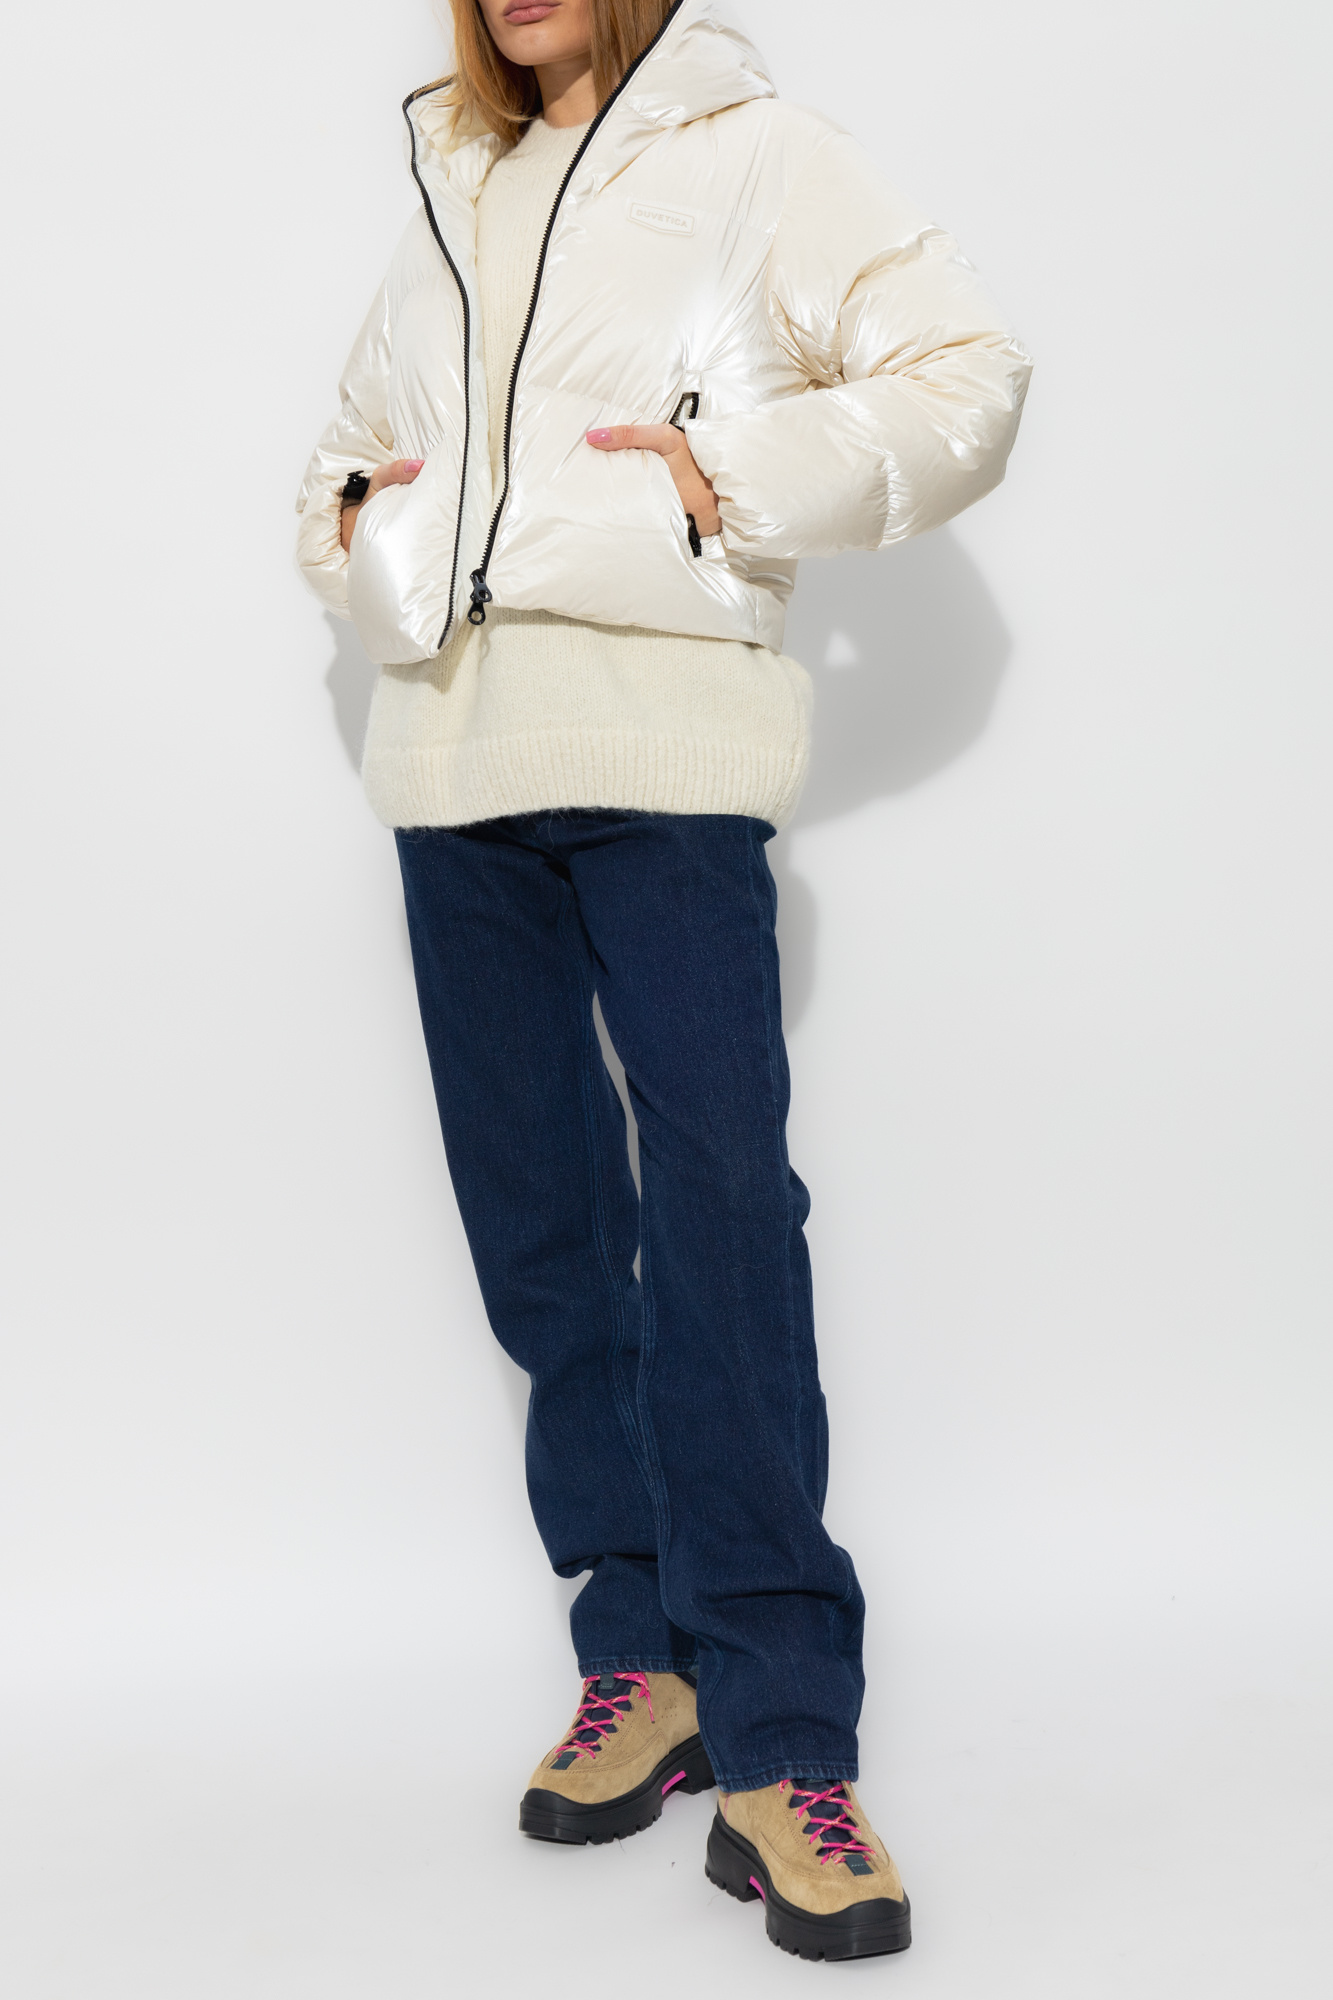 DKNY SPORT Women's Logo Puffer Jacket White Size XL MSRP $160